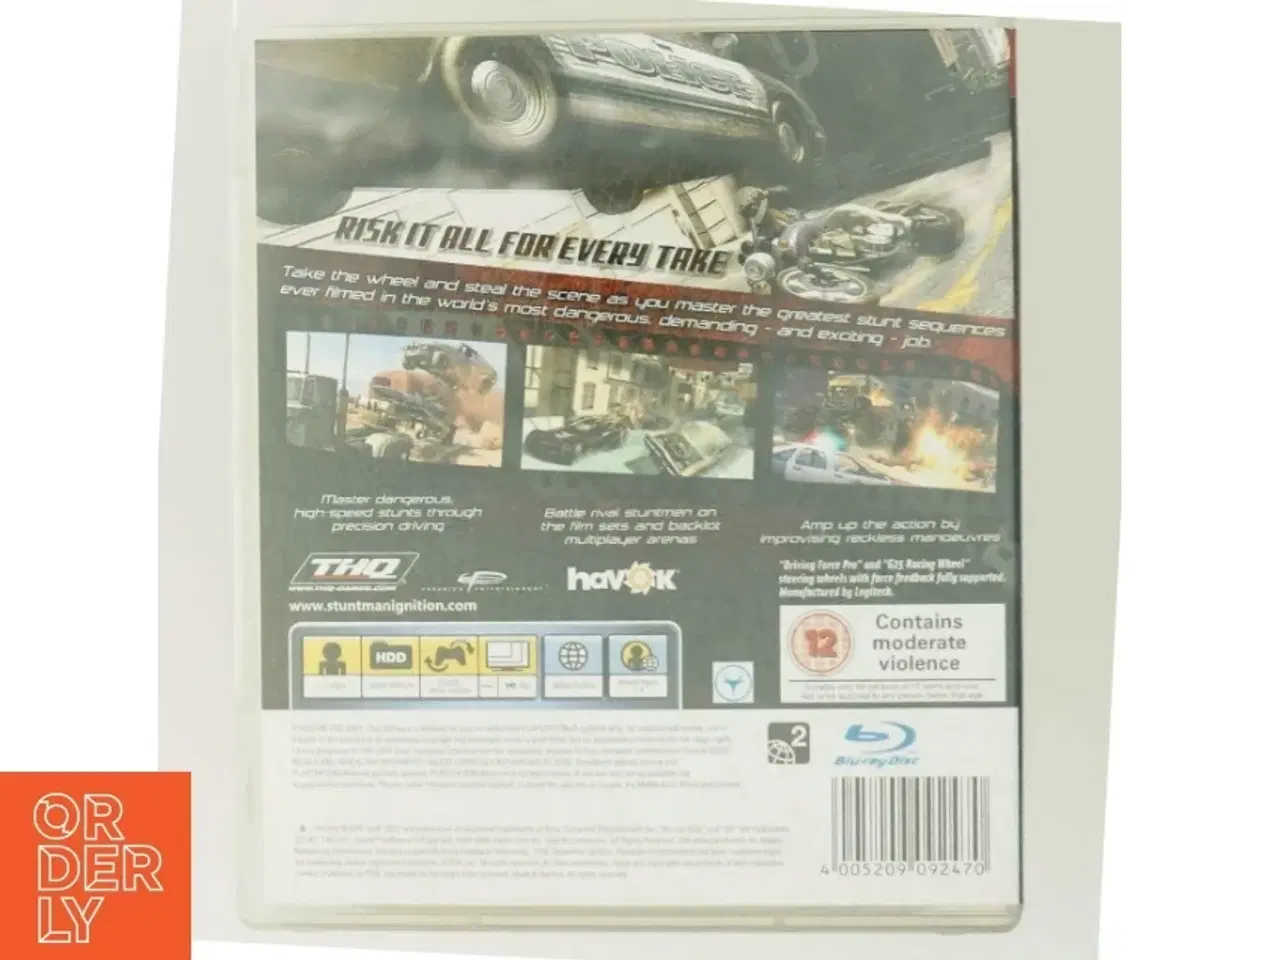 Billede 3 - Stuntmand Ignition PS3 spil fra THQ